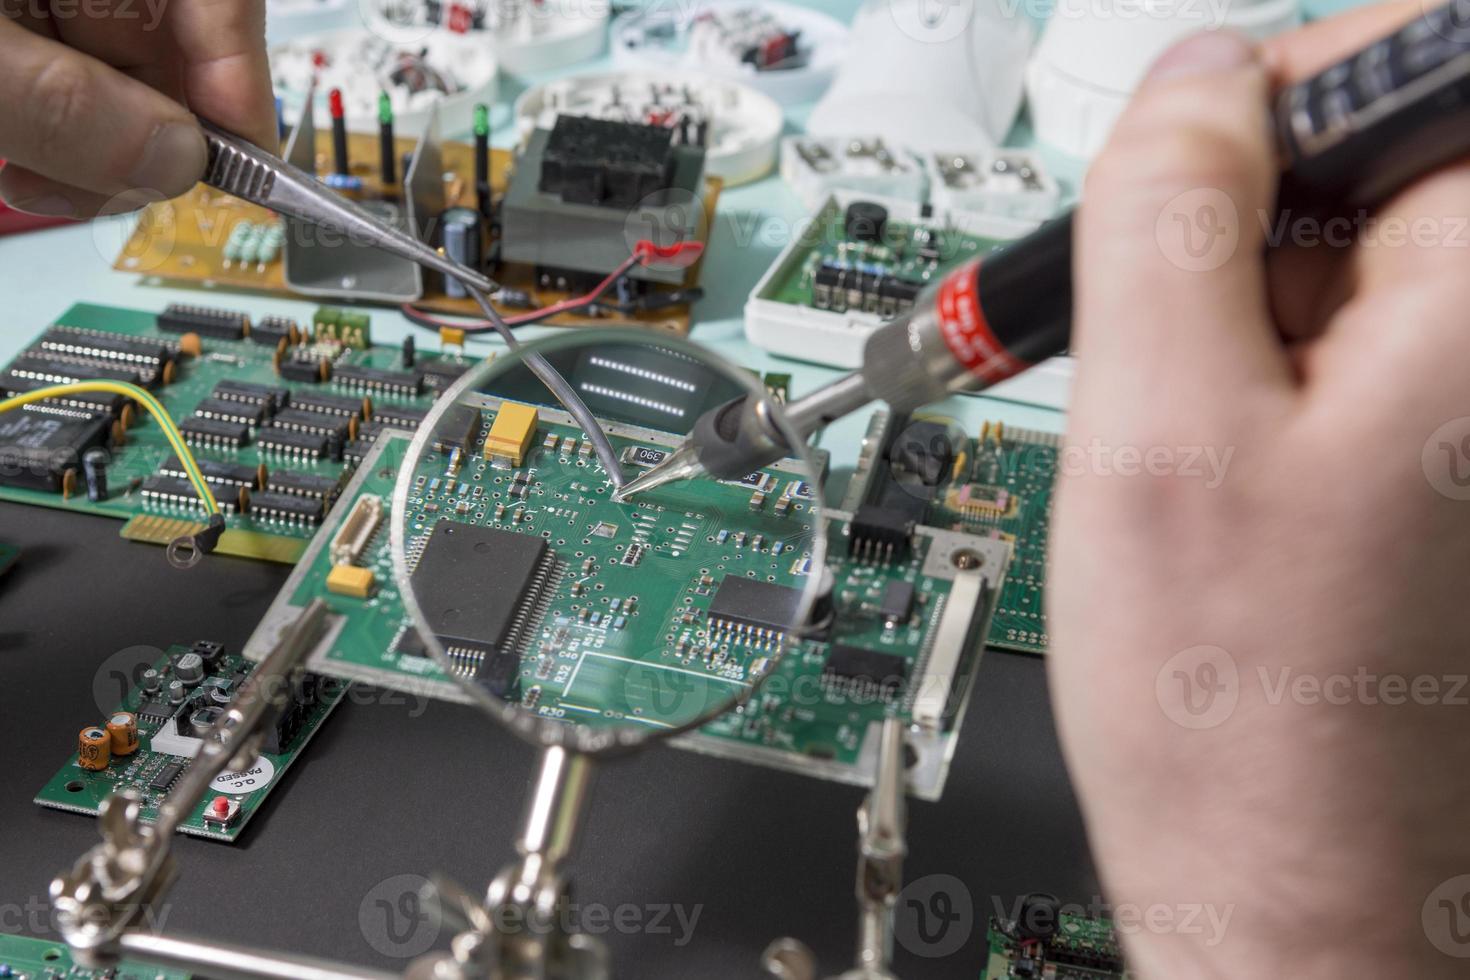 réparation d'appareils électroniques dans l'atelier. recyclage des déchets électroniques. photo